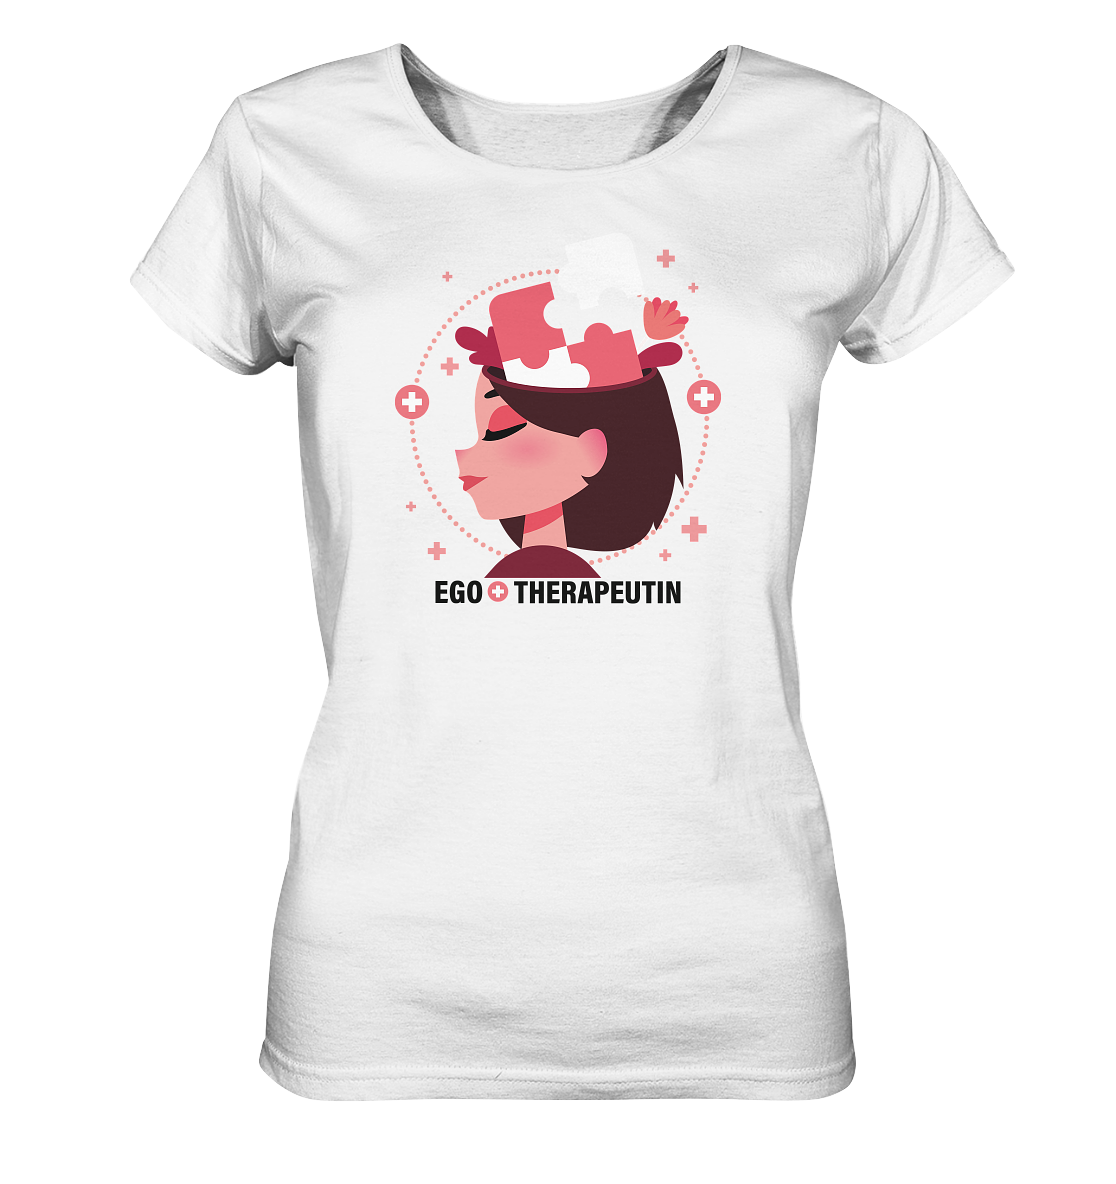 Edelmädel Bio Shirt ♥ Ego-Therapeutin in verschiedenen Farben - FROLLEIN KÄTHE